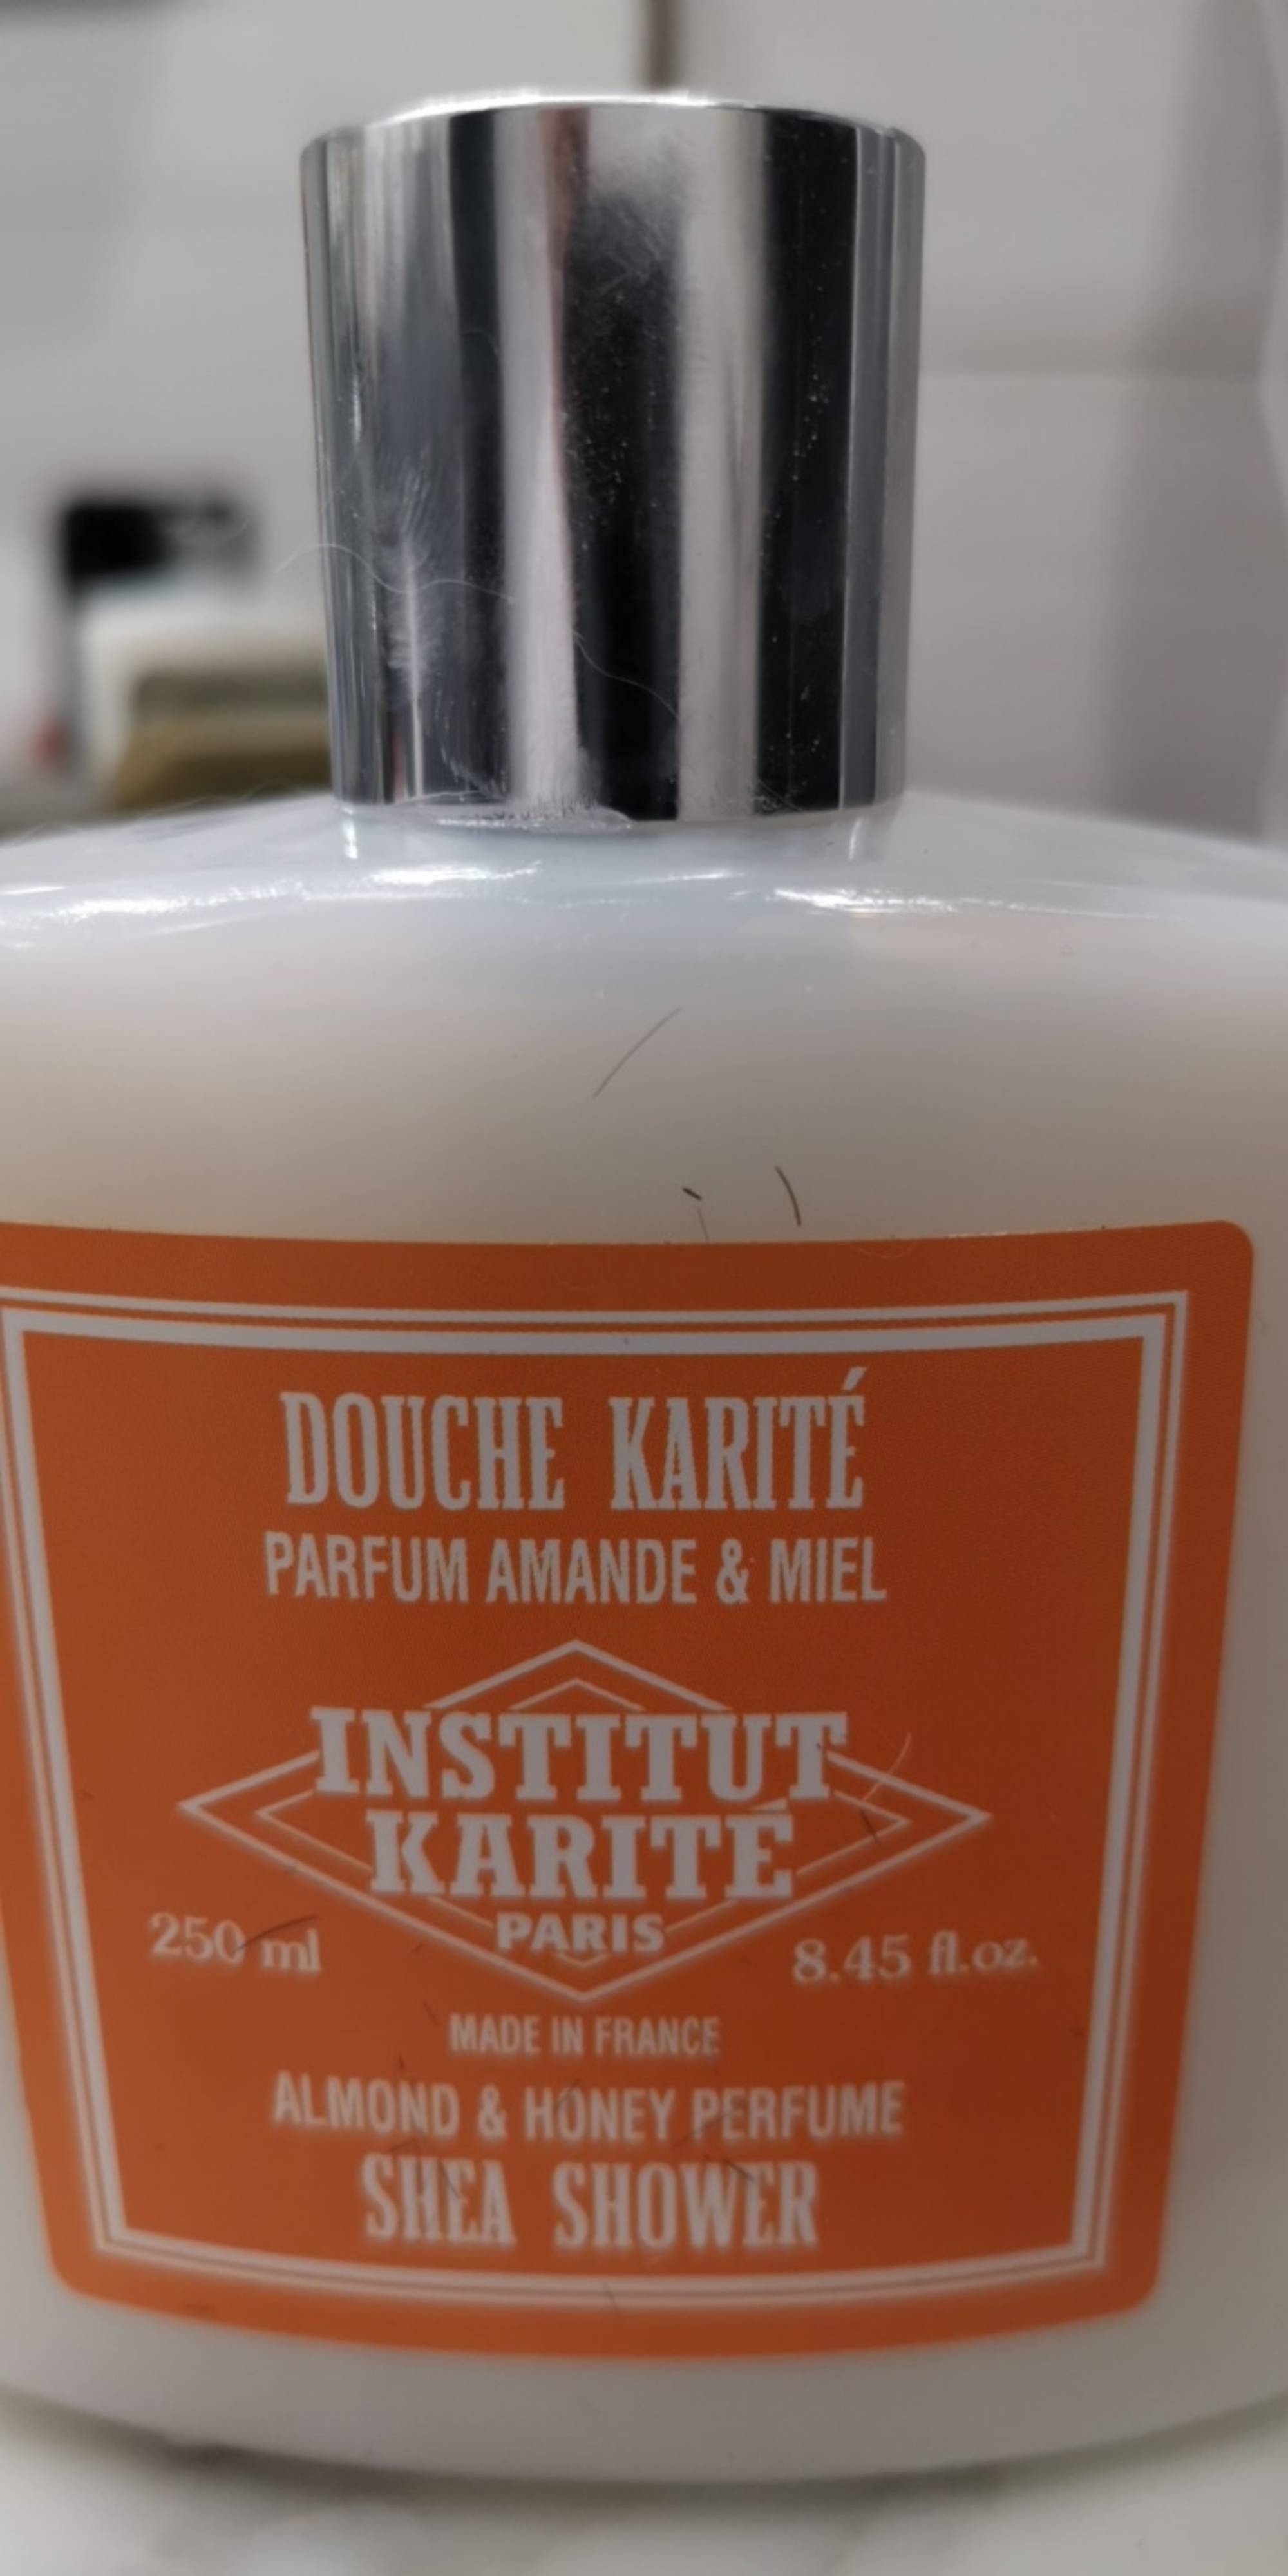 INSTITUT KARITÉ - Douche karité - Parfum Amande & Miel 